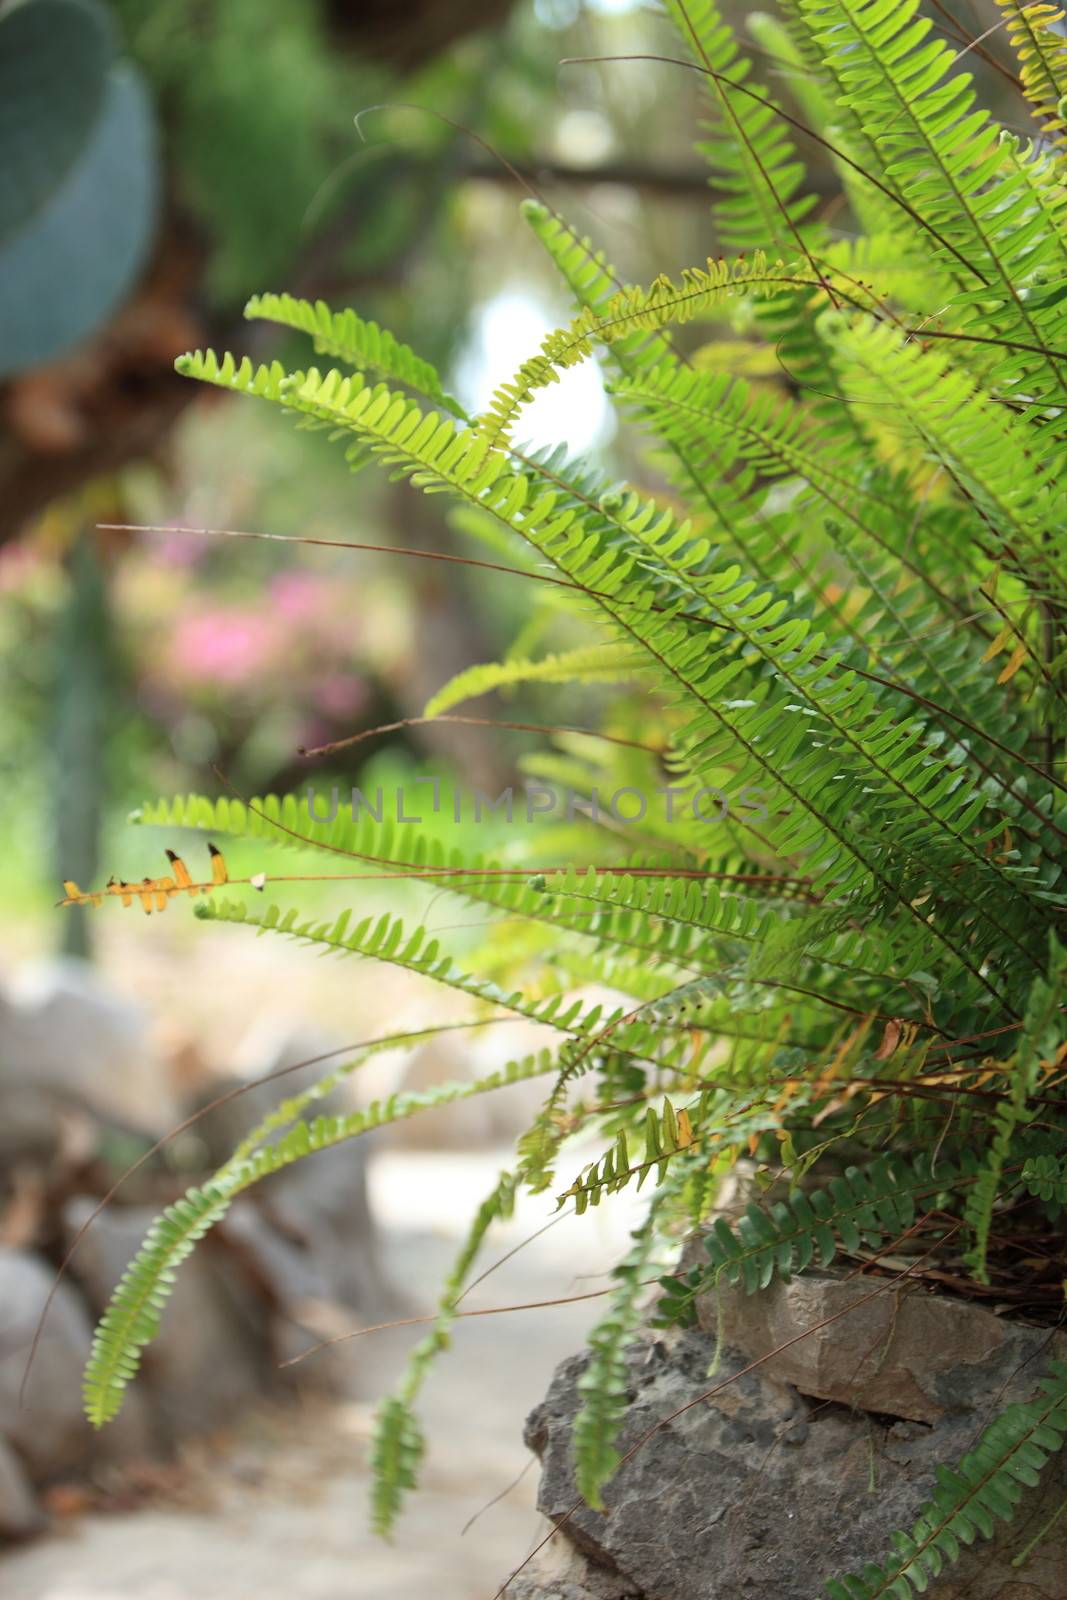 Leafy green fern by Farina6000